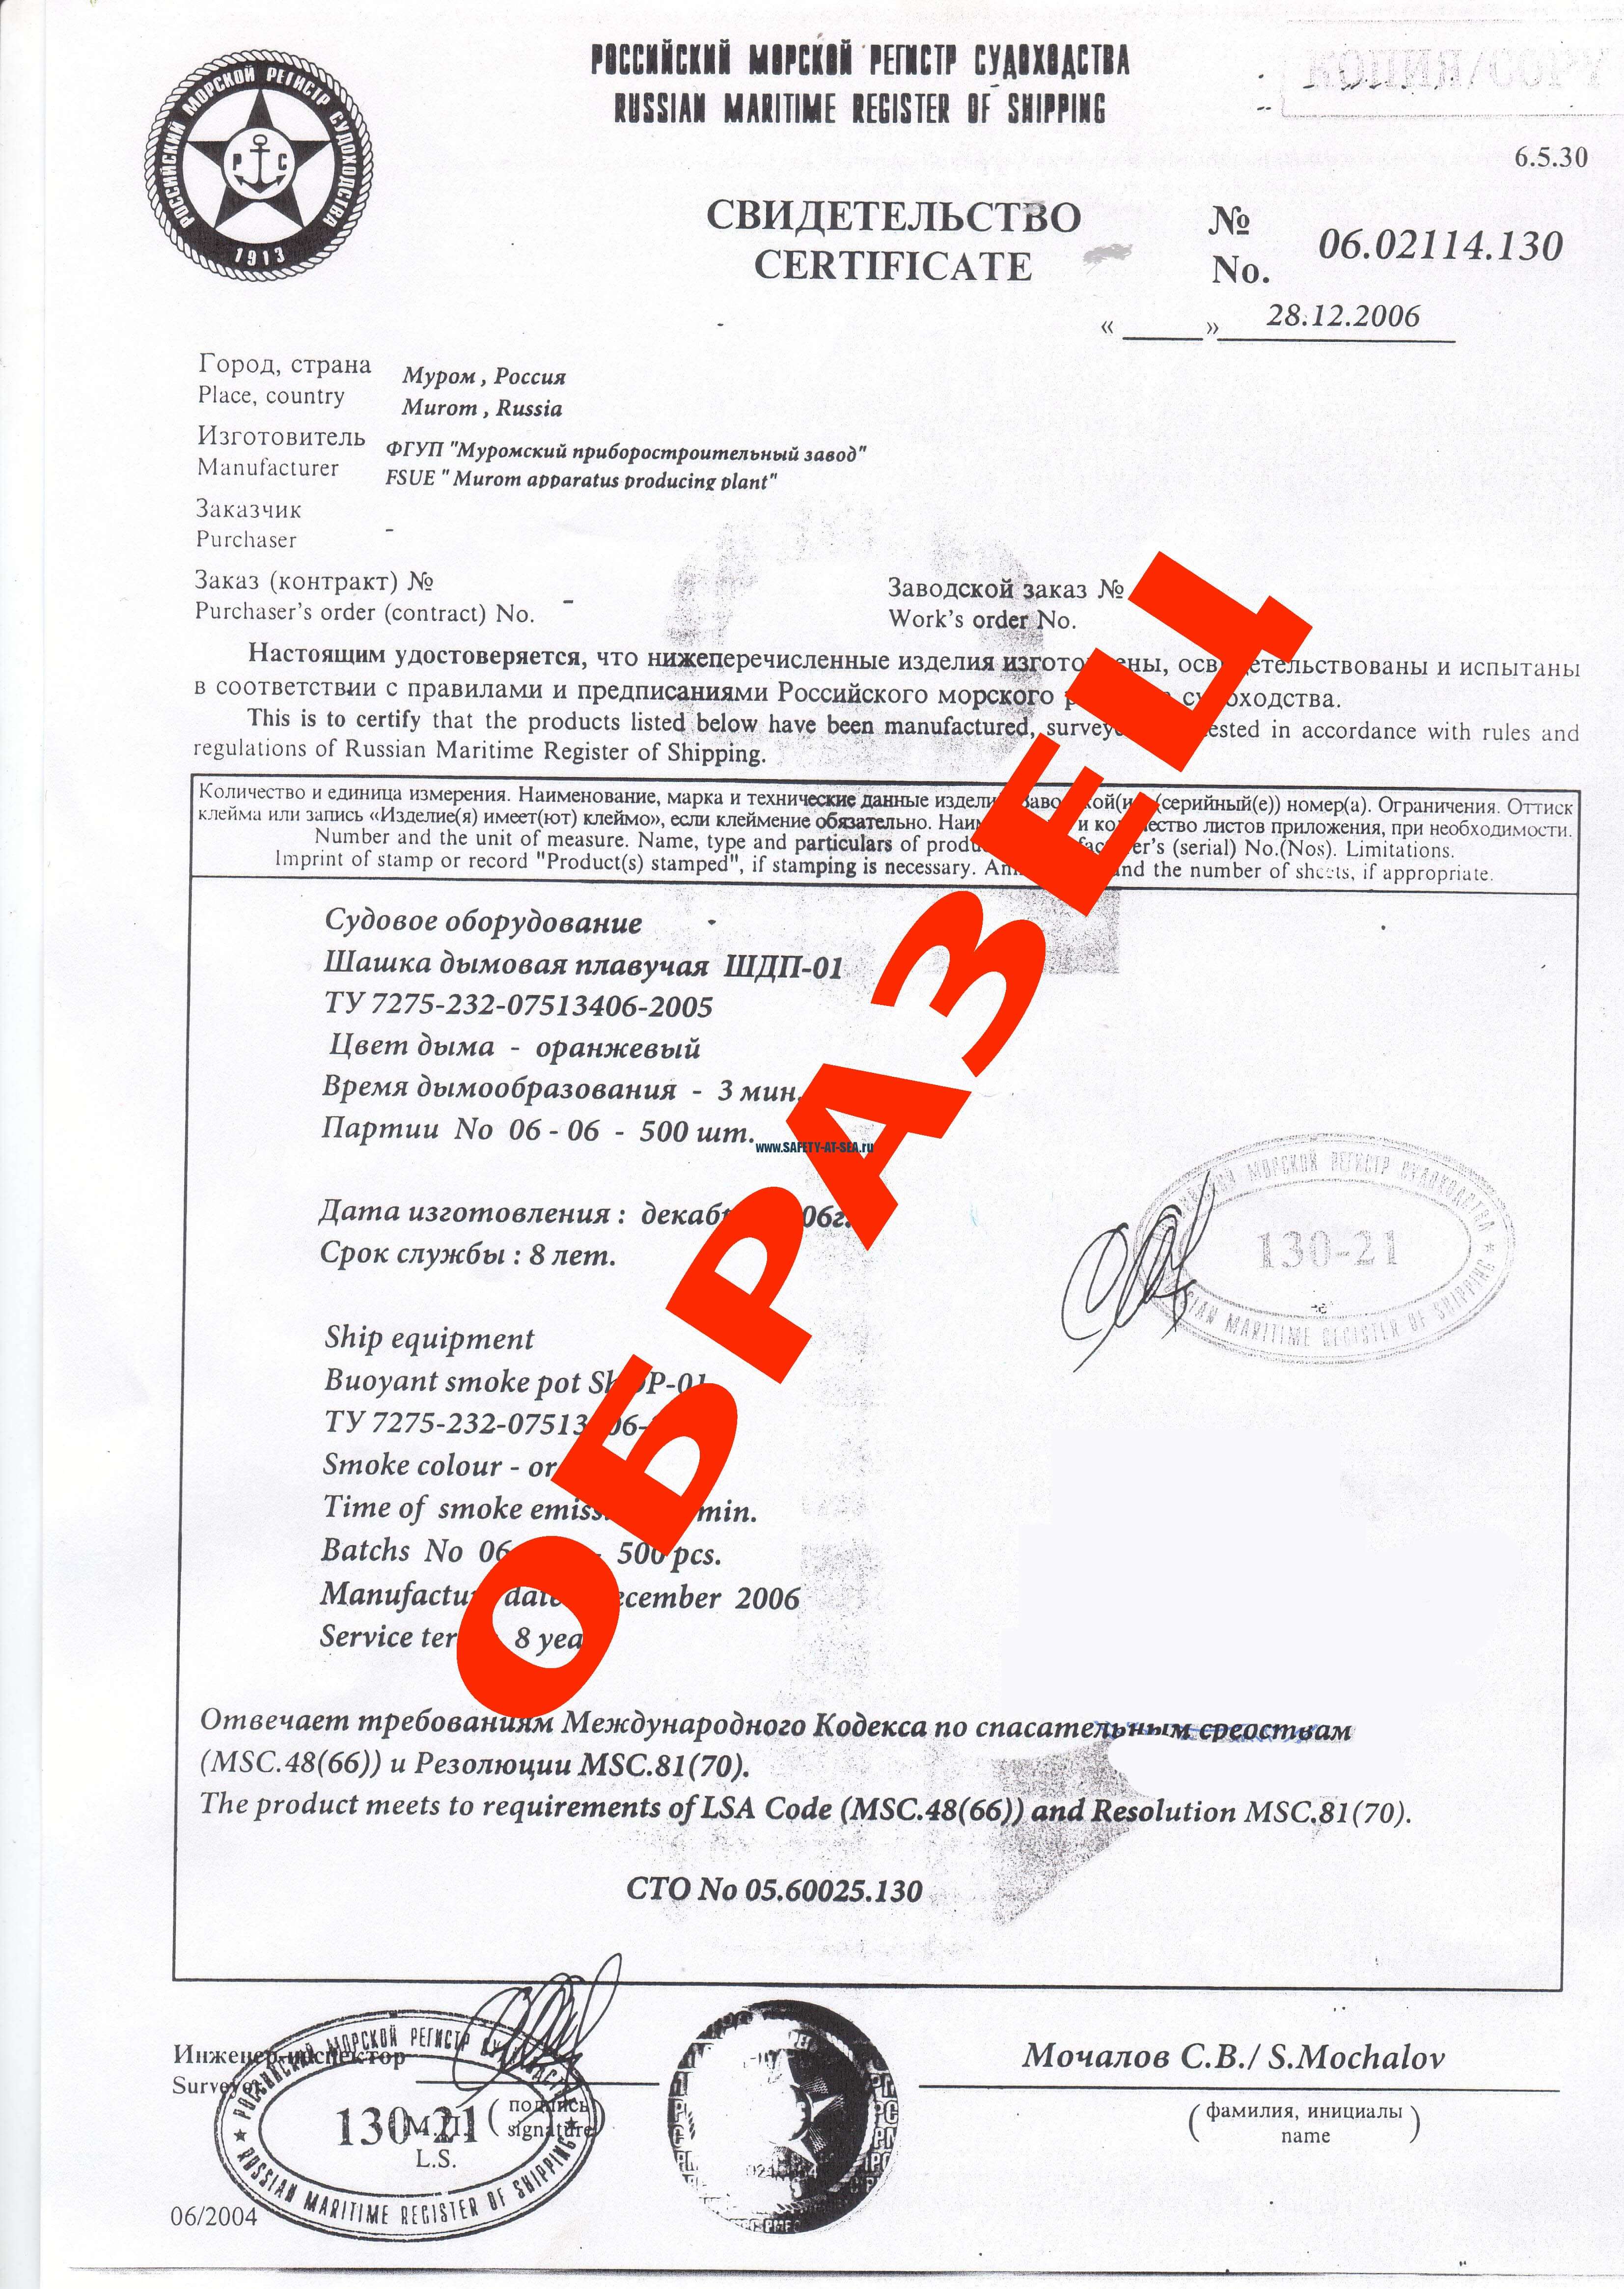 Сертификат шашка дымовая судовая "ШДП-01"